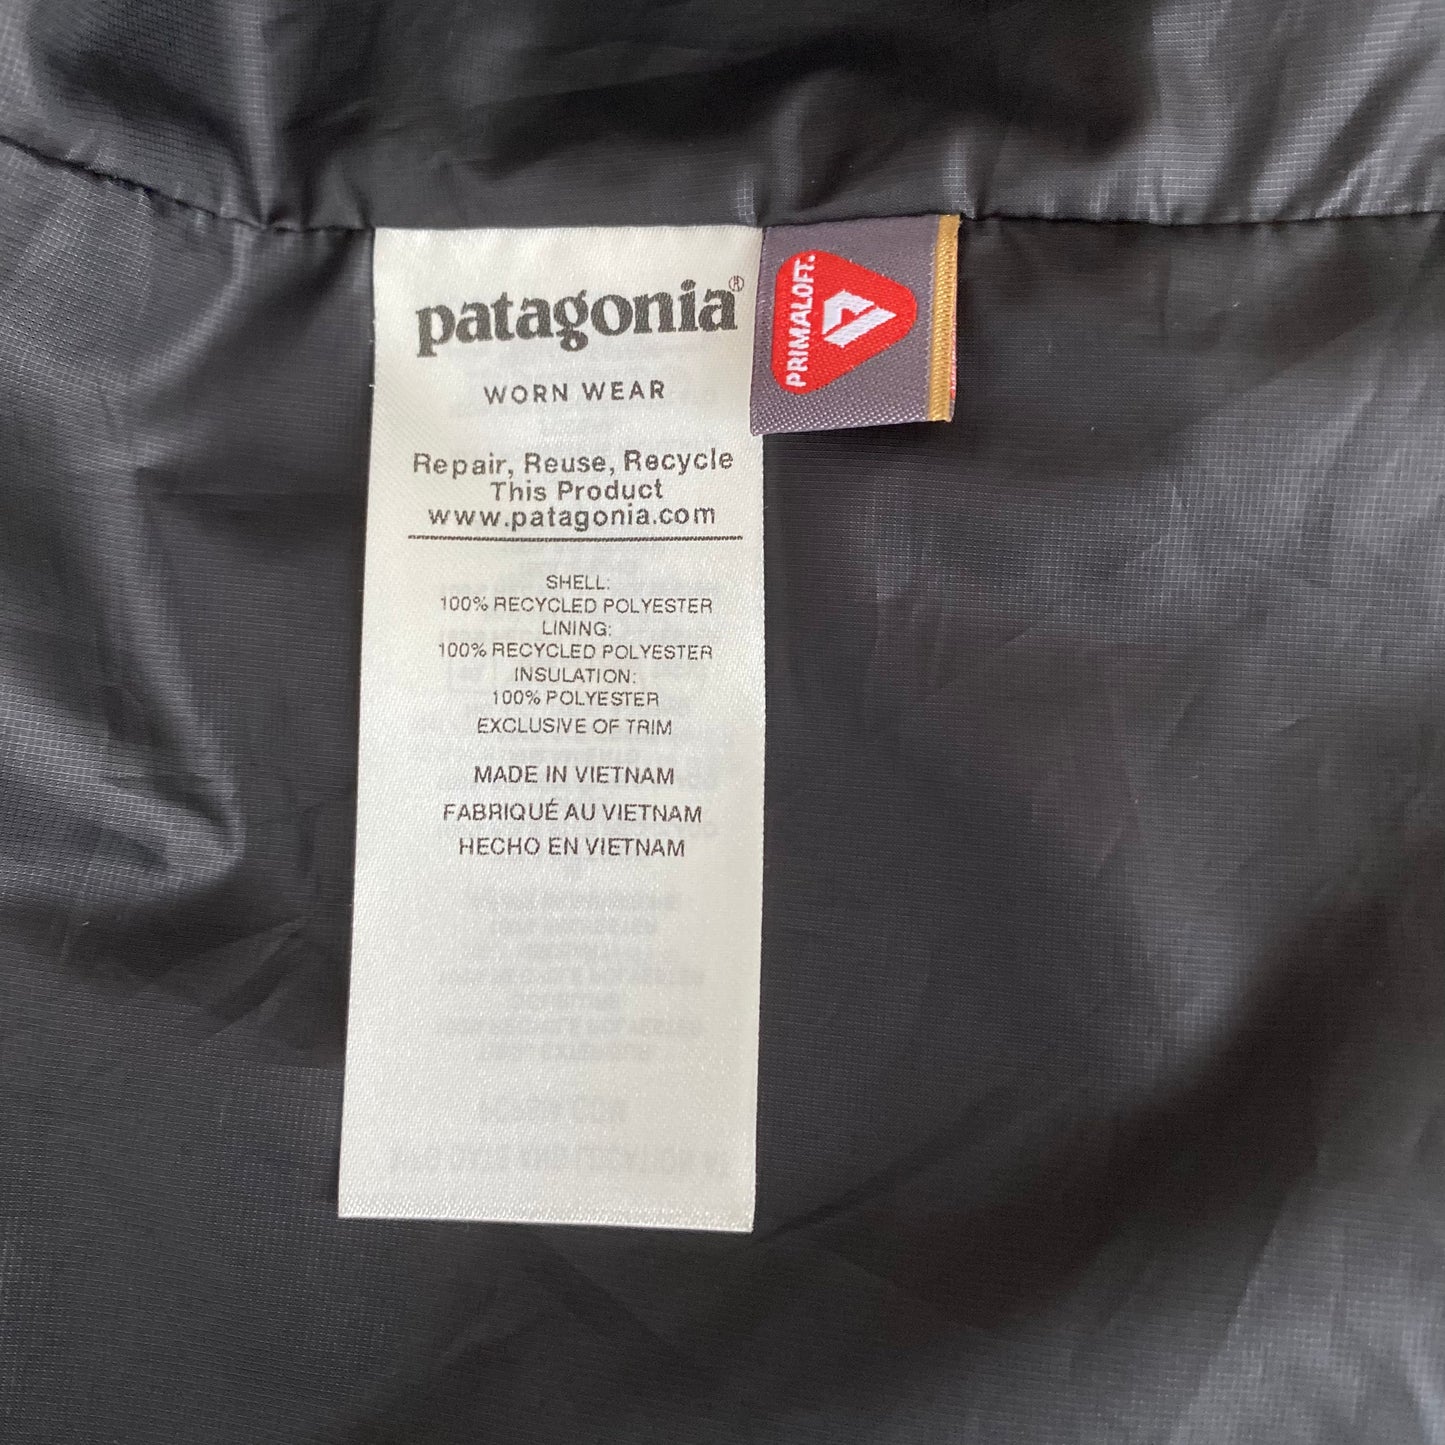 Patagonia Men’s Nano Puff Vest Size Medium